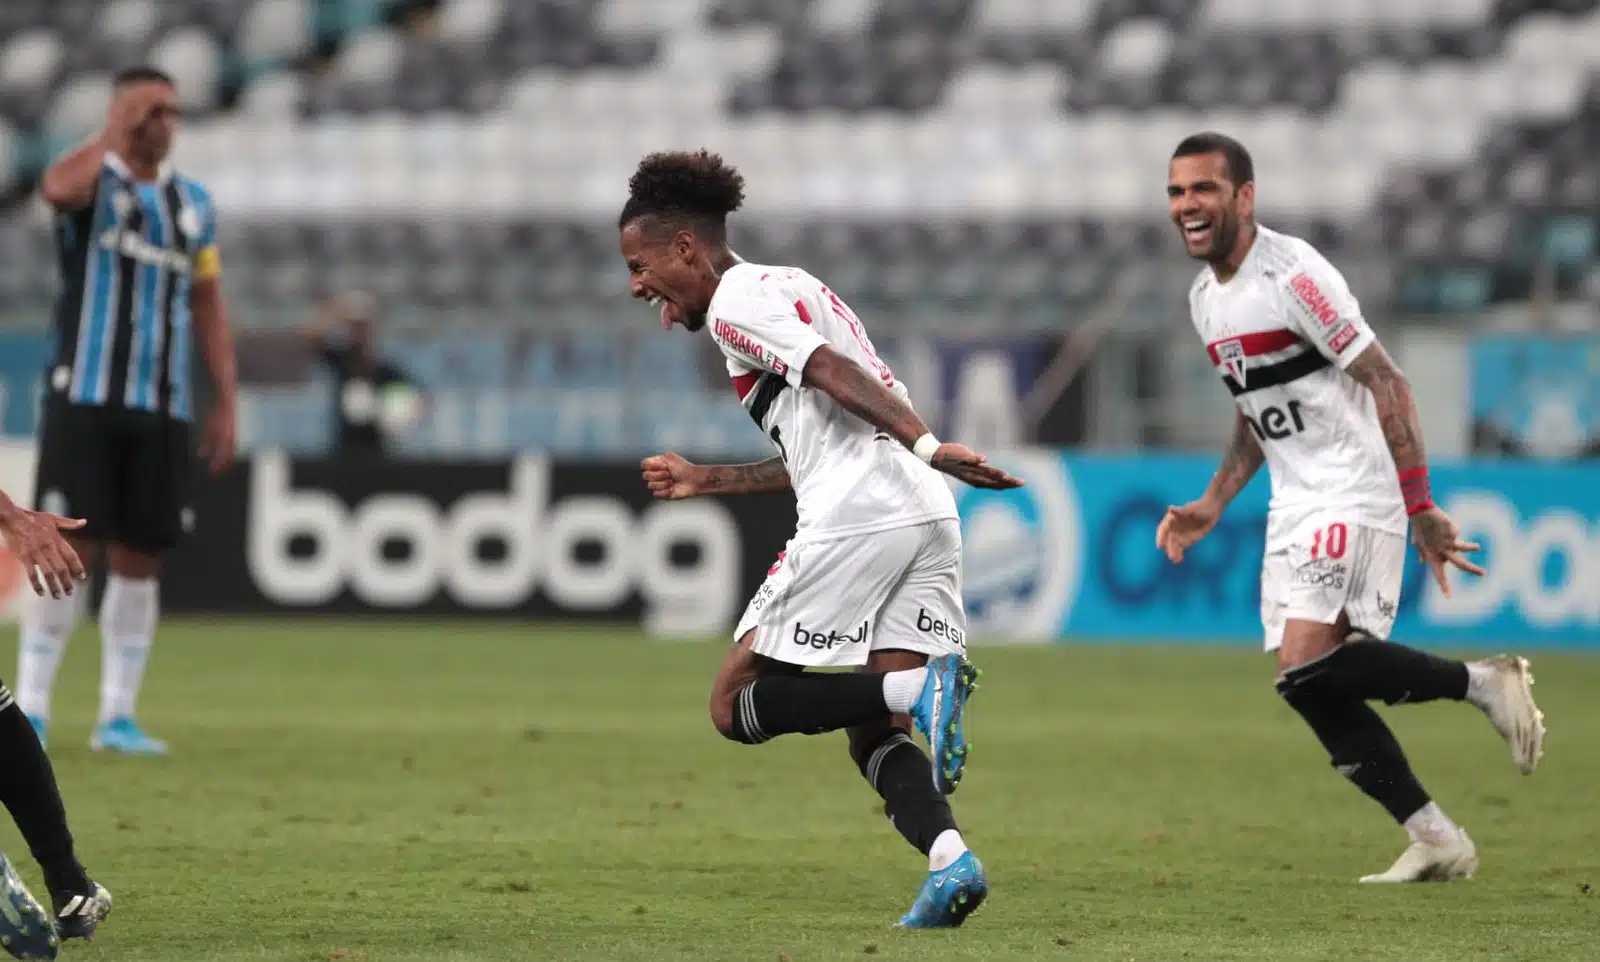 Tchê Tchê marcou o primeiro gol do São Paulo contra o Grêmio